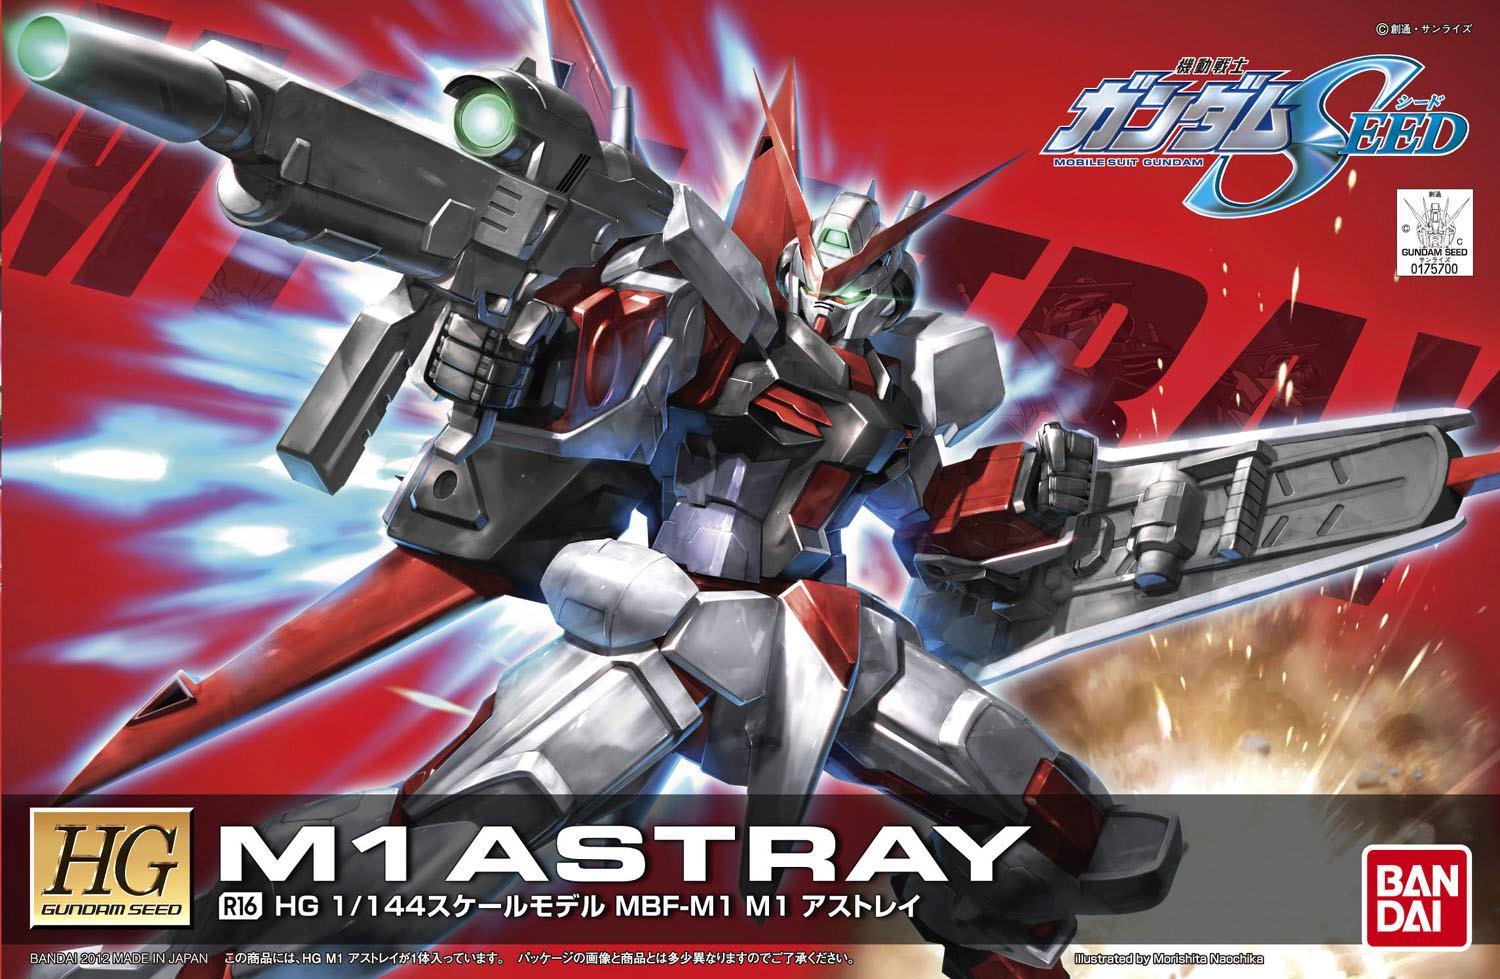 R16 HG 1 144 M1 Astray. Bandai Gundam Models Kits Premium Shop